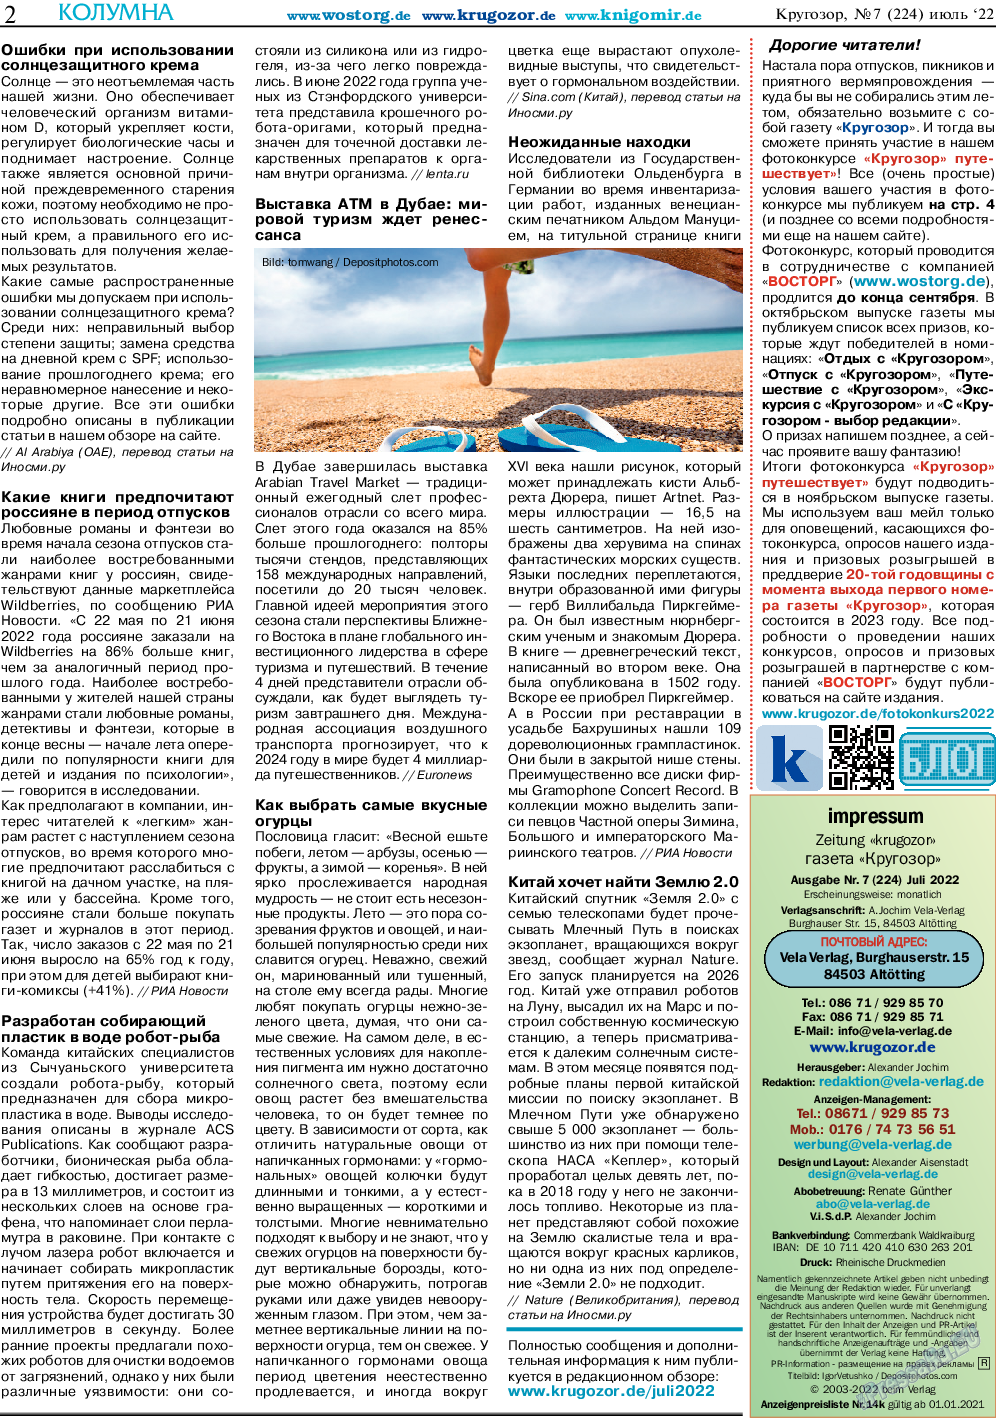 Кругозор (газета). 2022 год, номер 7, стр. 2